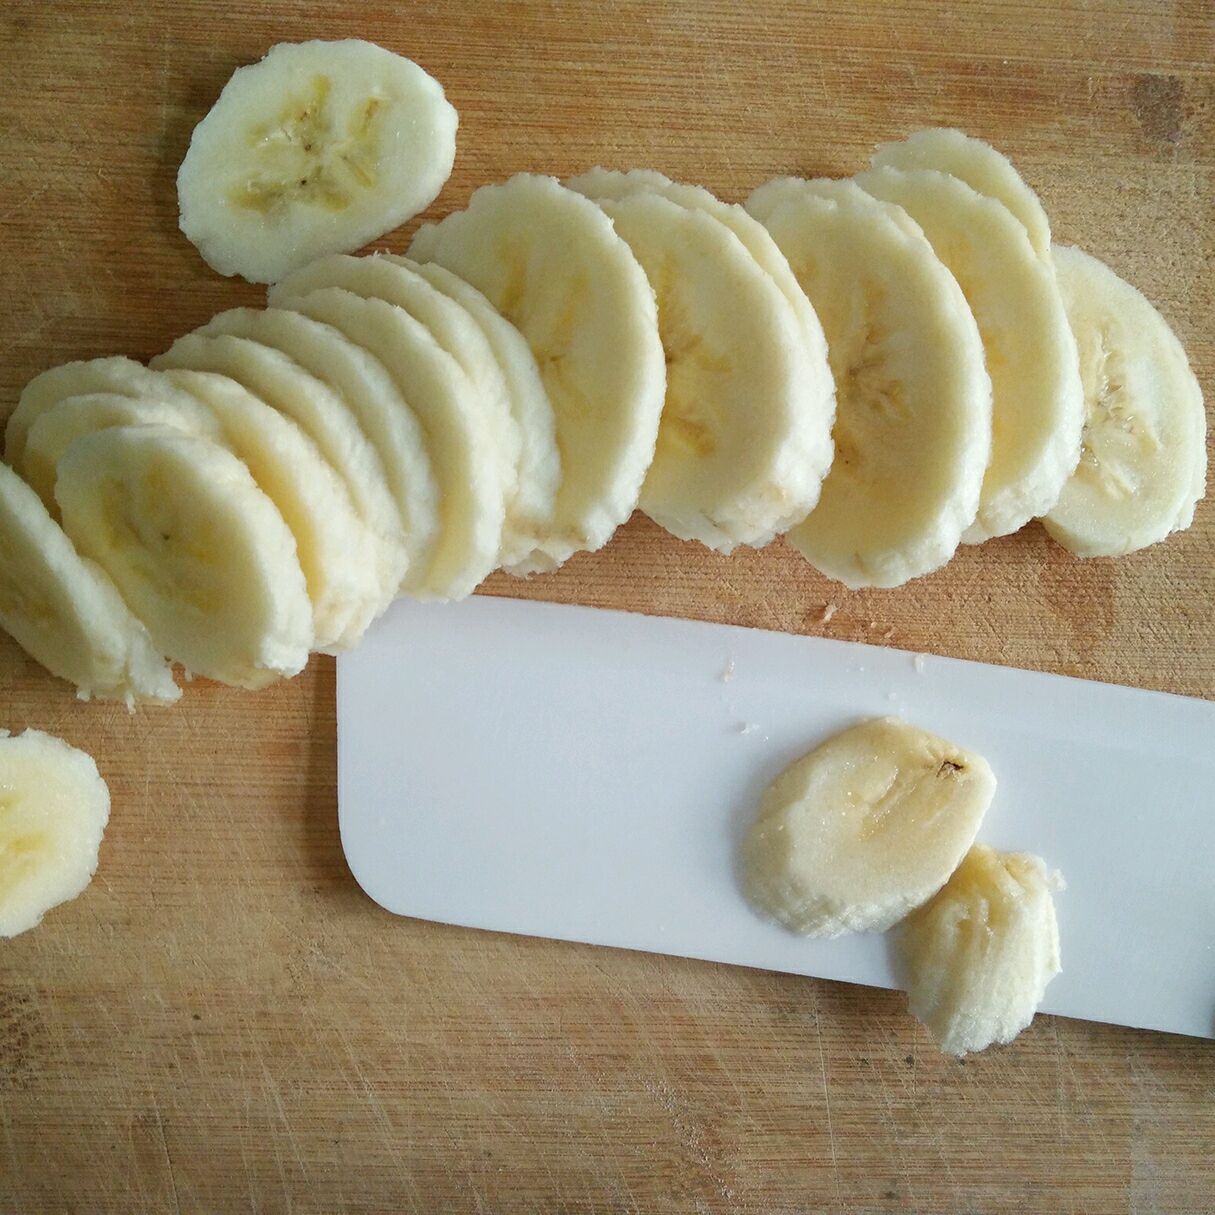 成熟黄色香蕉用切的香蕉 库存图片. 图片 包括有 详细资料, 食物, 特写镜头, 新鲜, 有机, 营养 - 132728331